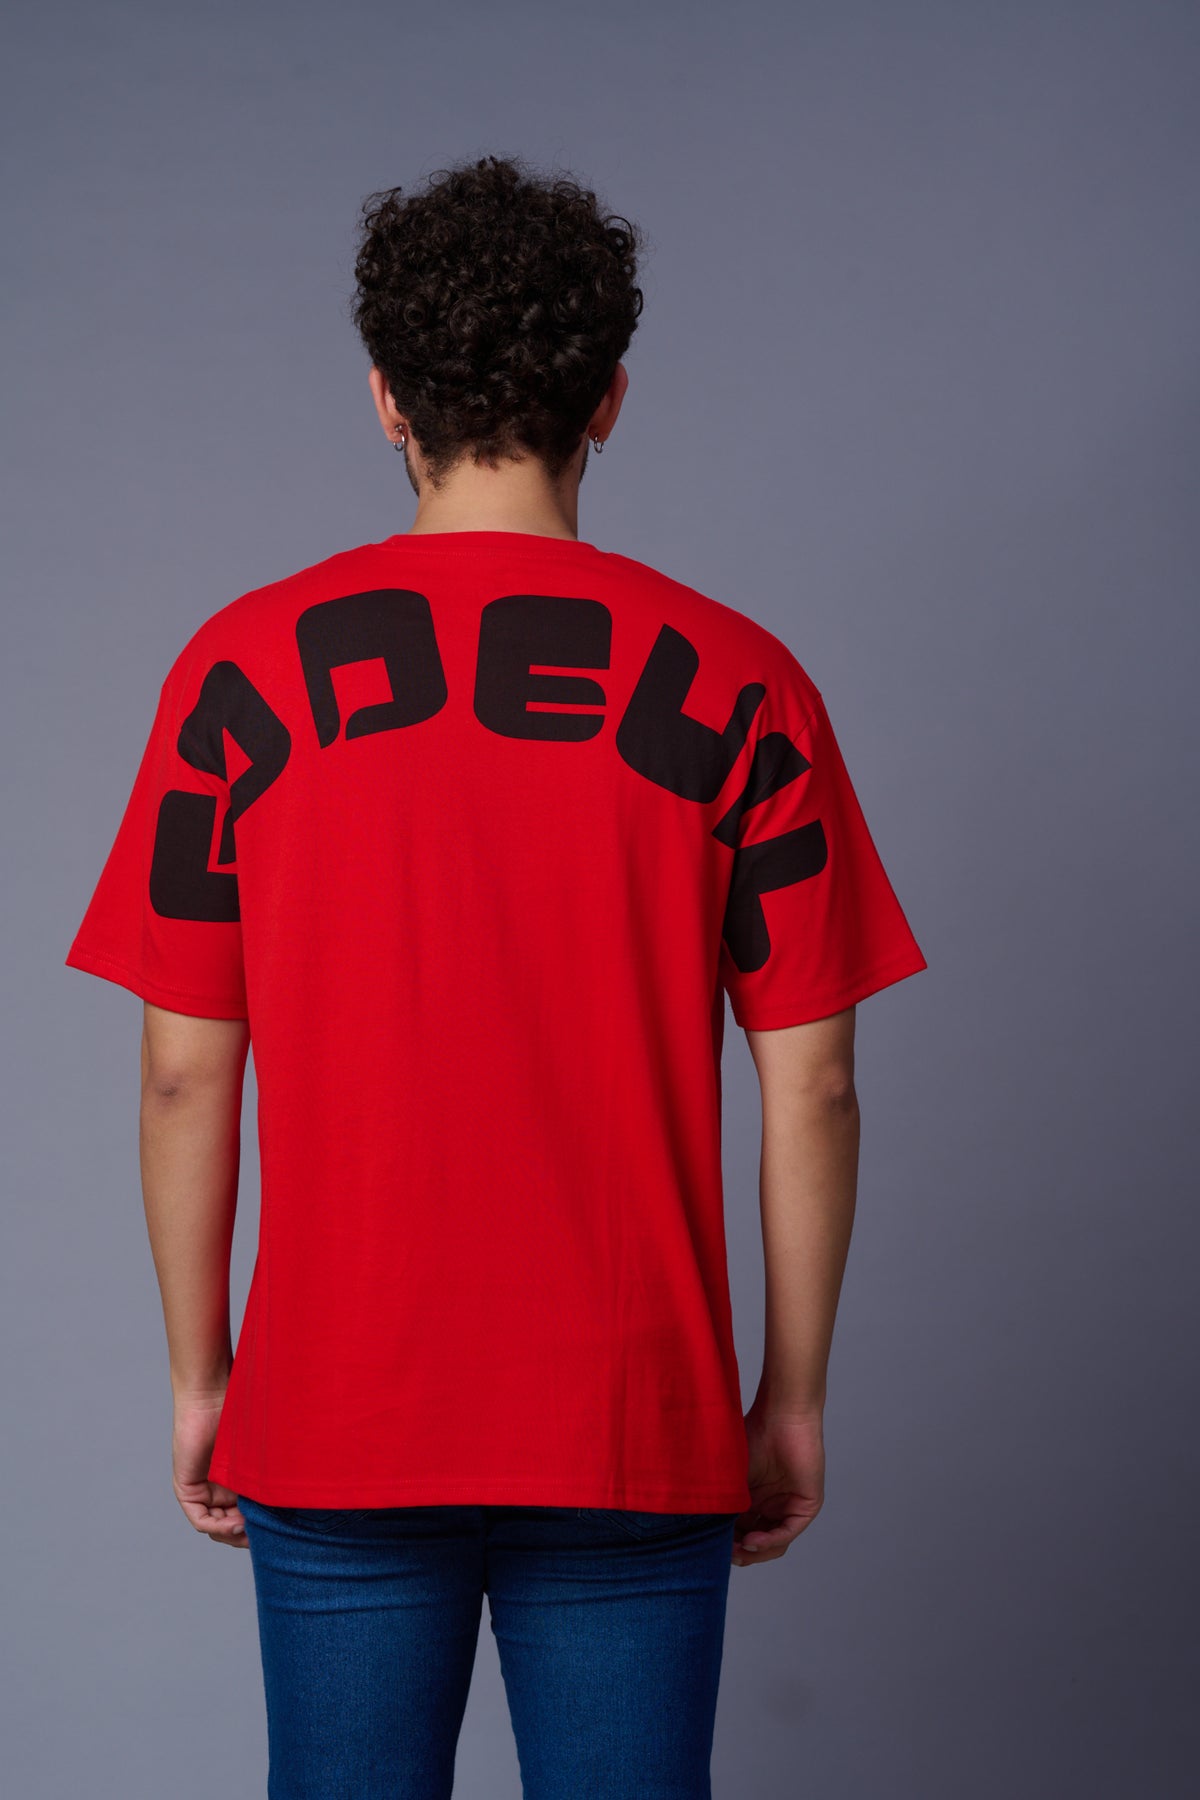 Go Devil in Black Printed Red Oversized T-Shirt for Men